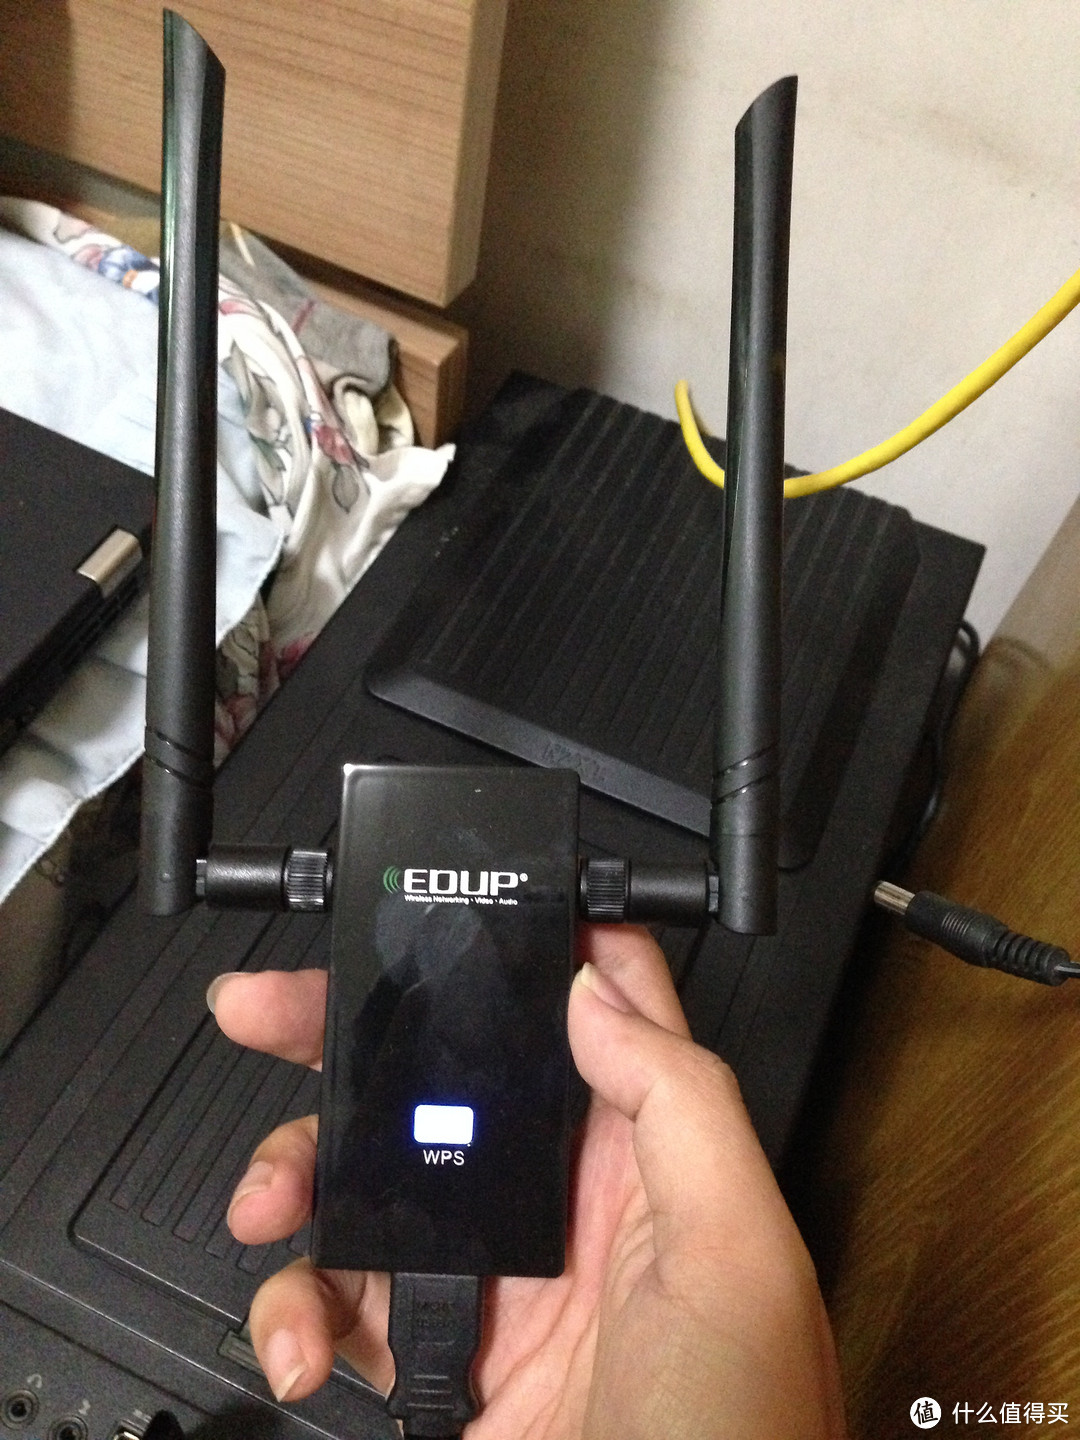 5G双频网卡波折购买使用小记-EDUP EP-AC160 无线网卡